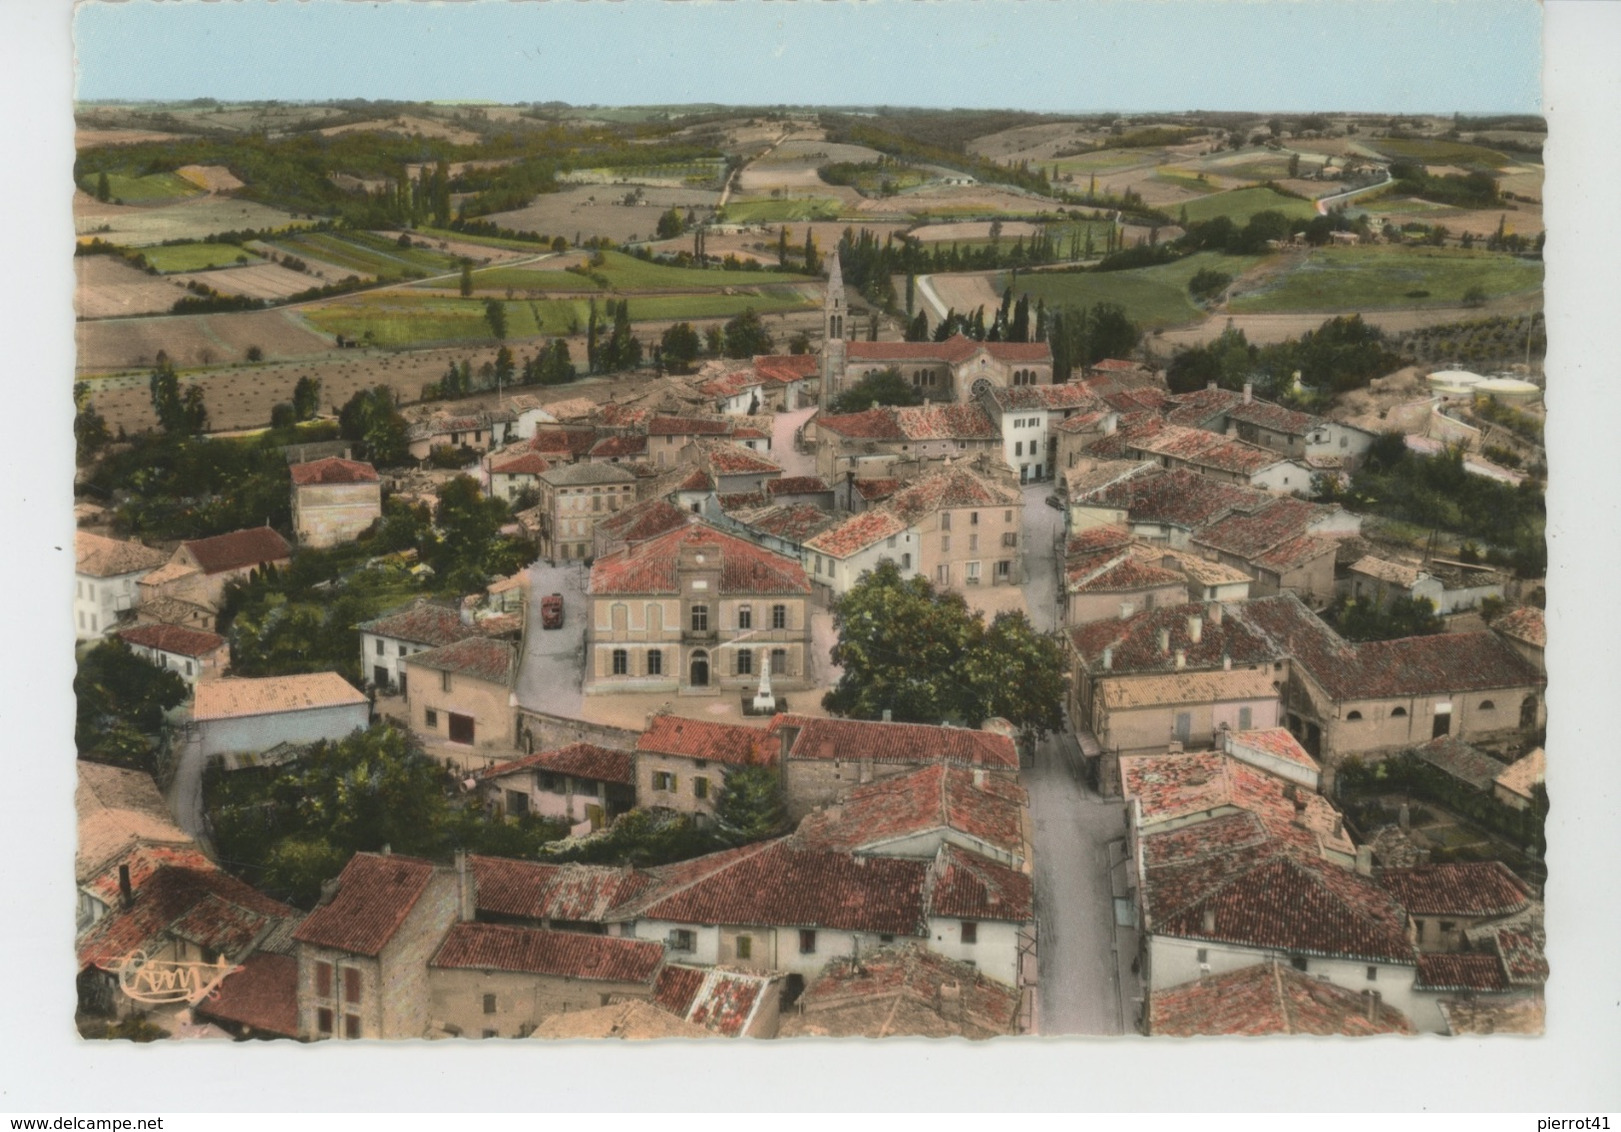 MONTCLAR DE QUERCY - Vue Panoramique Aérienne - Montclar De Quercy